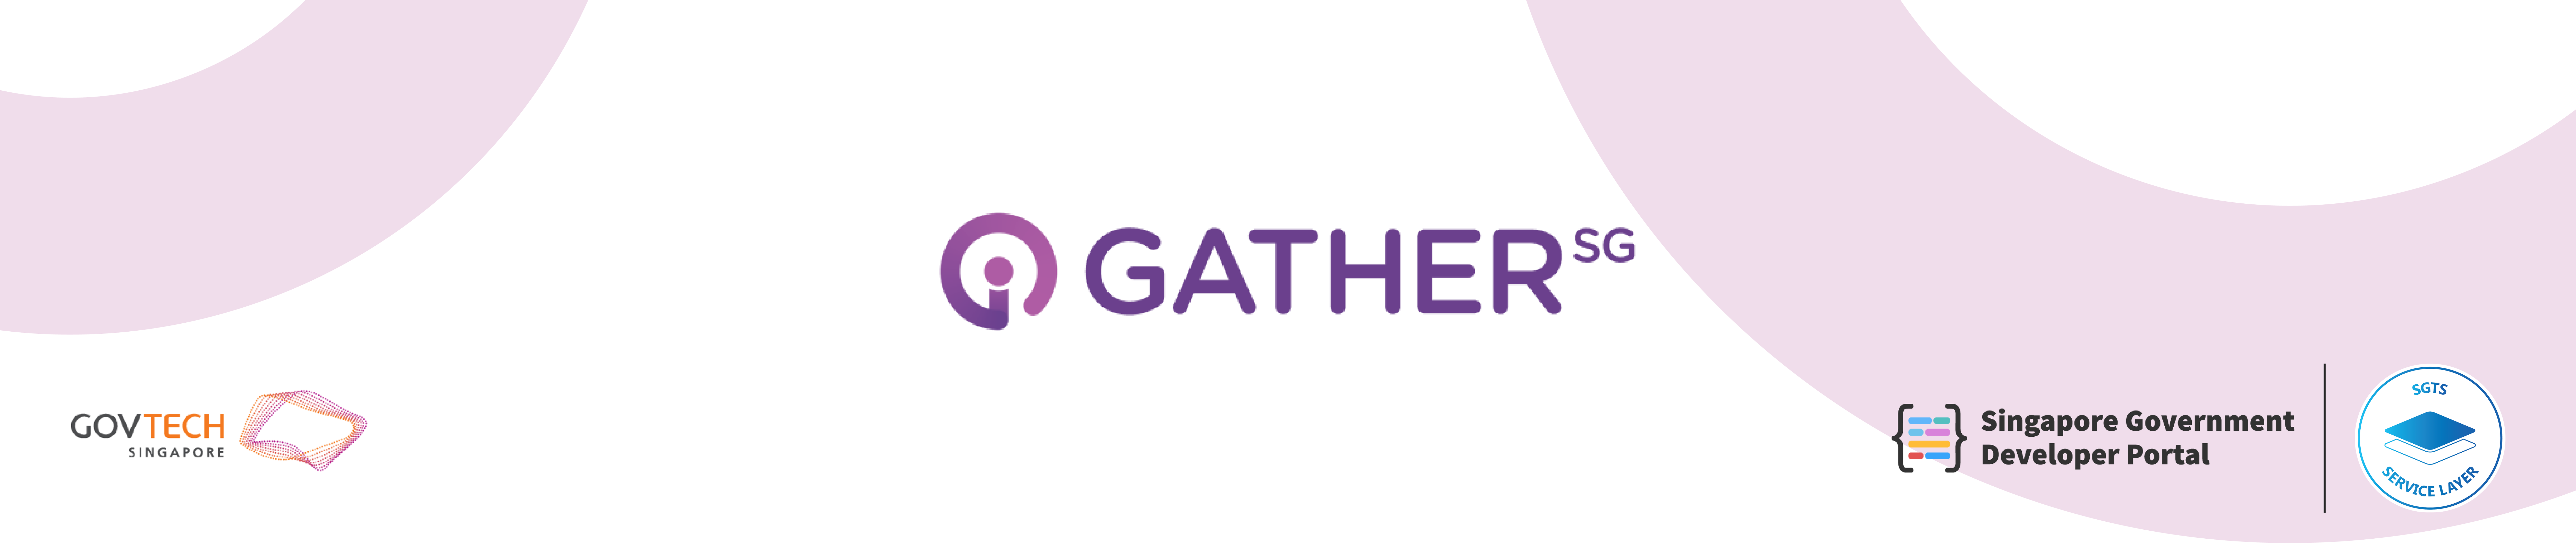 GatherSG header banner